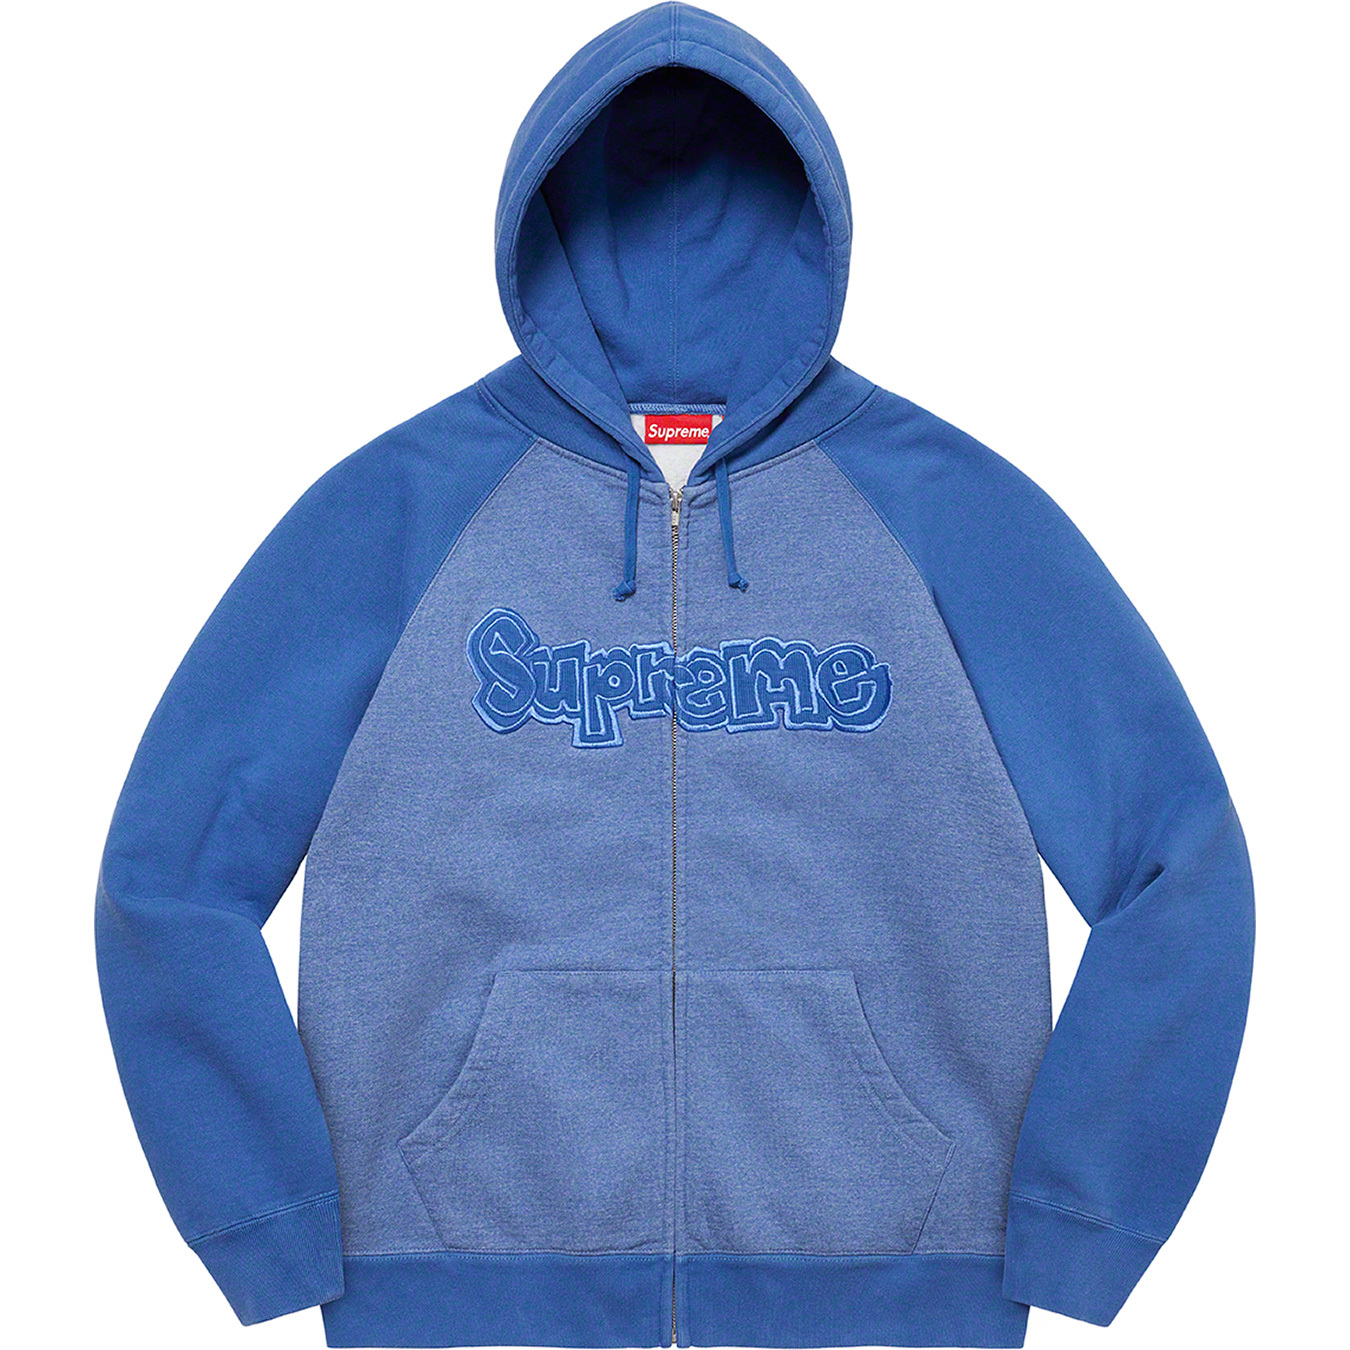 Supreme Gonz Appliqué Zip Up Hooded Sweatshirt